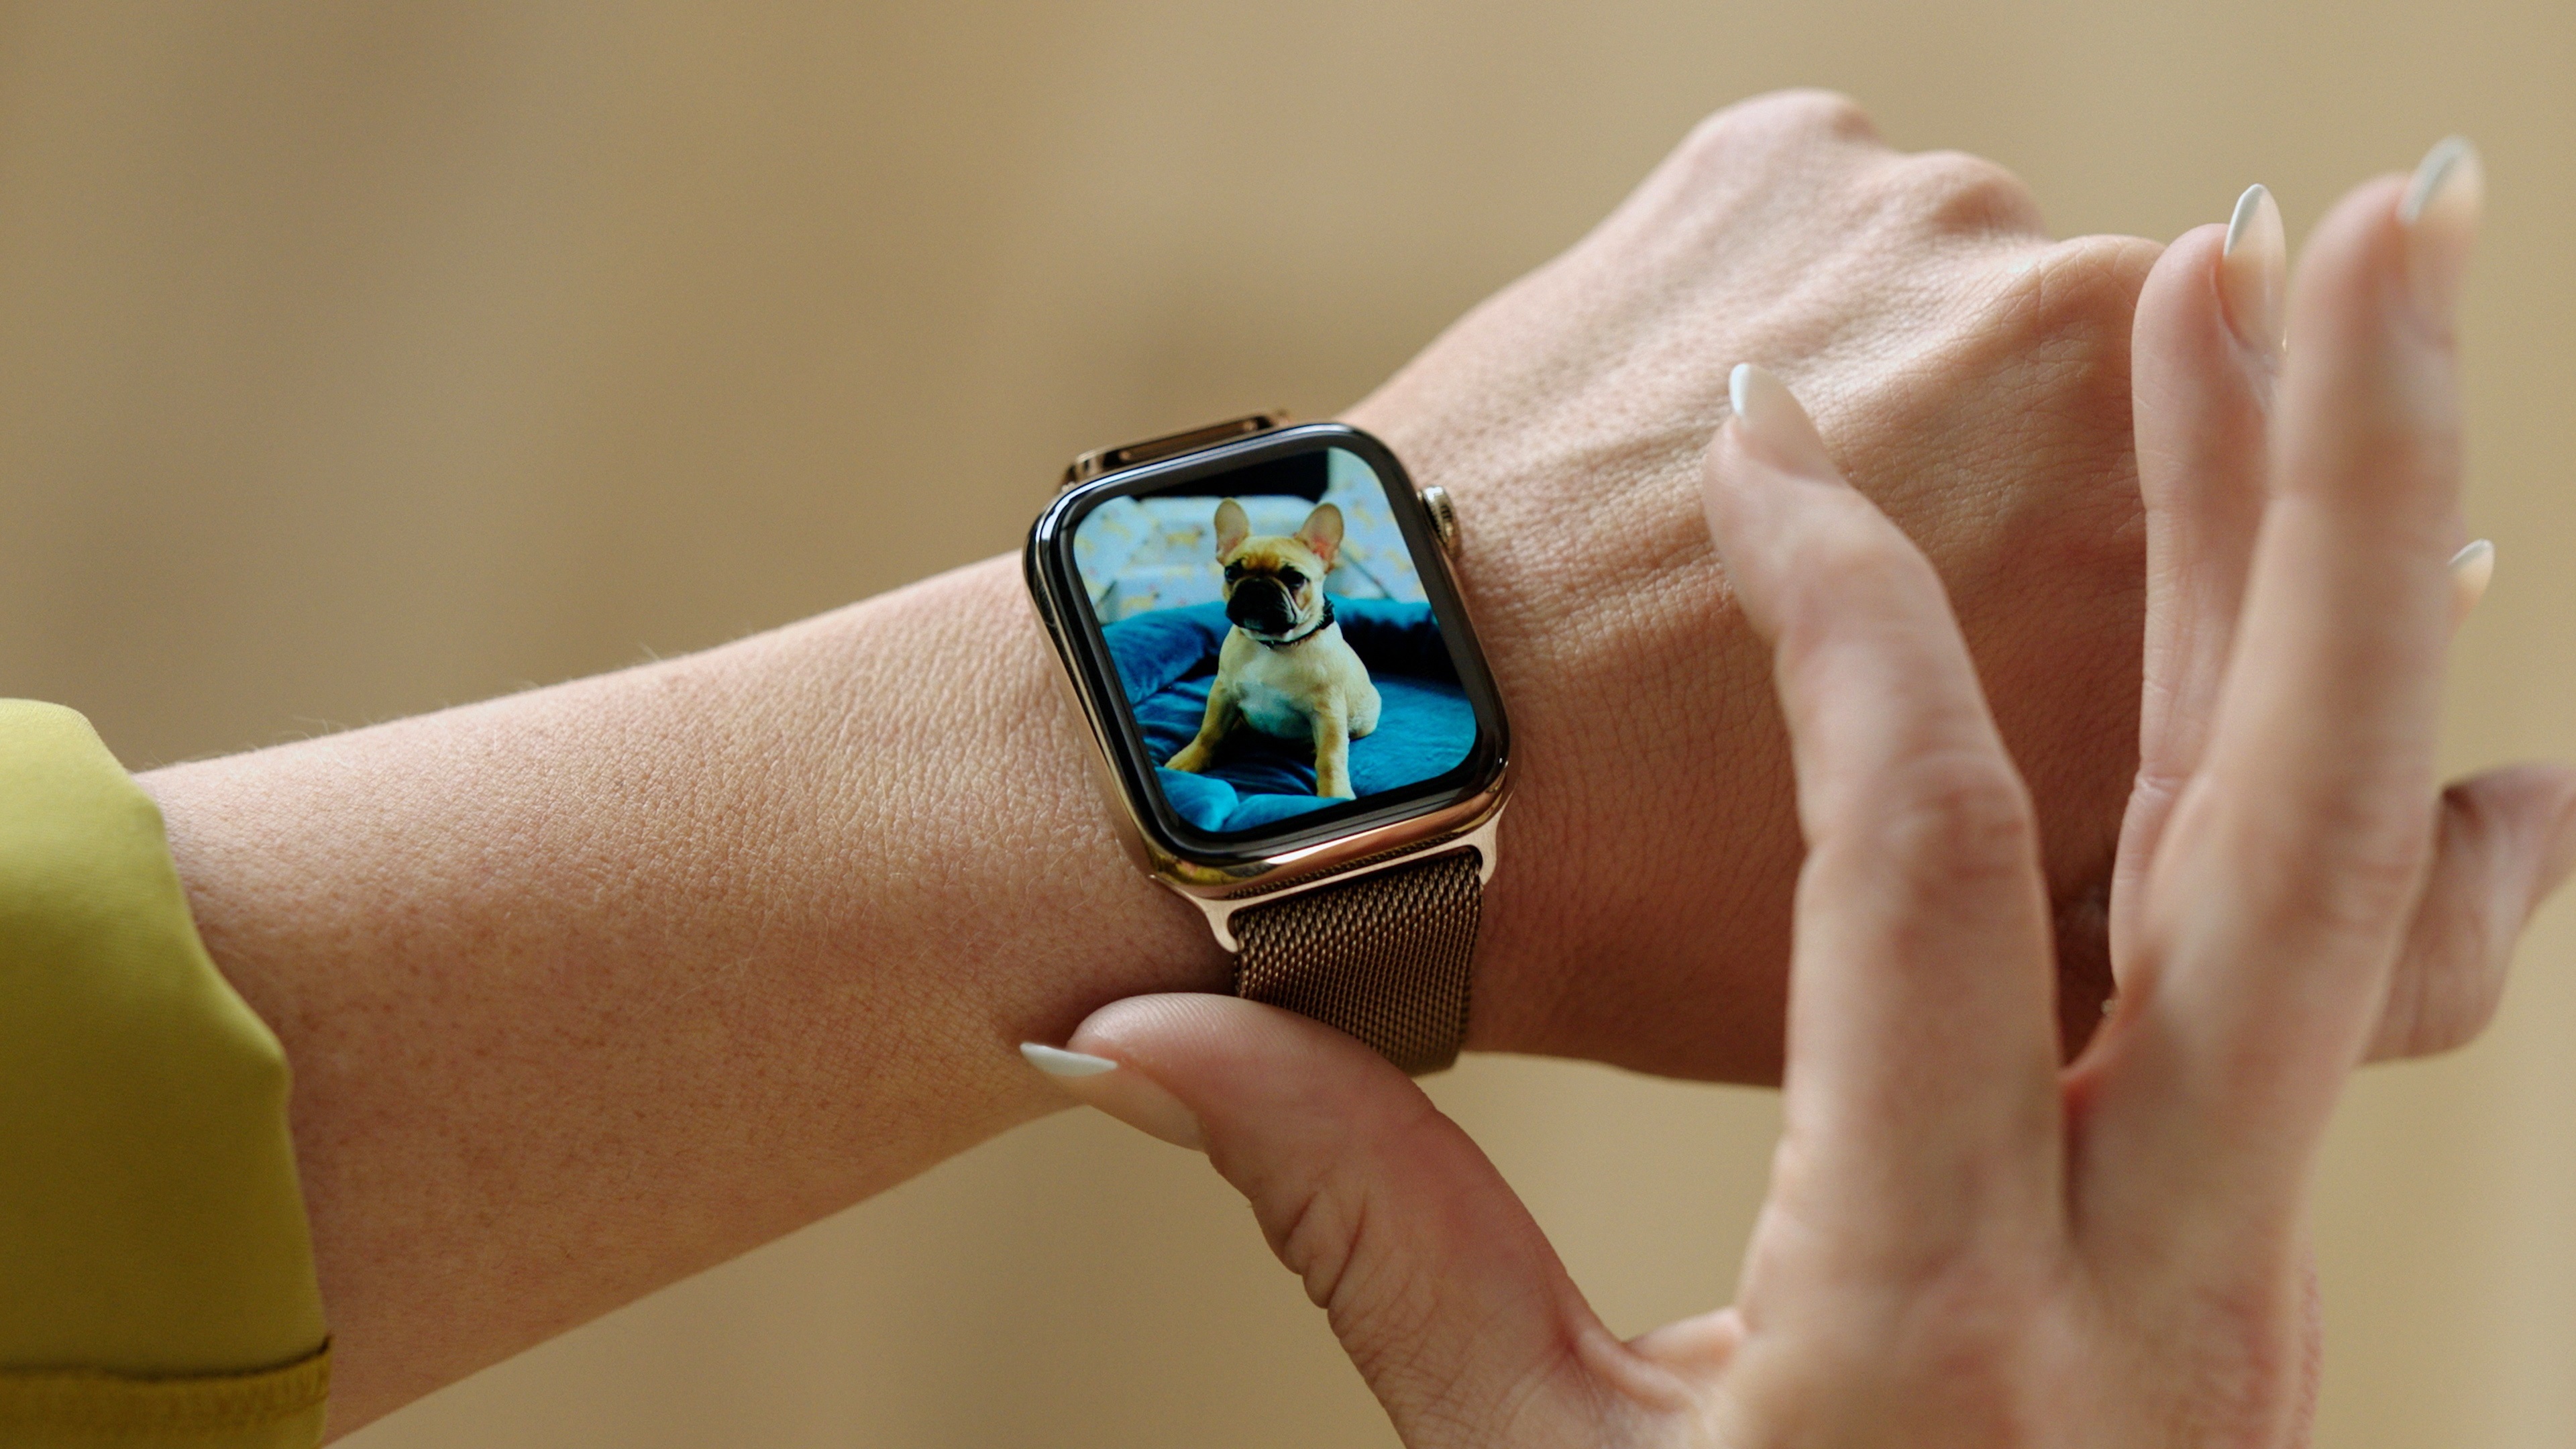 Apple Watch incluiría un medidor de glucosa